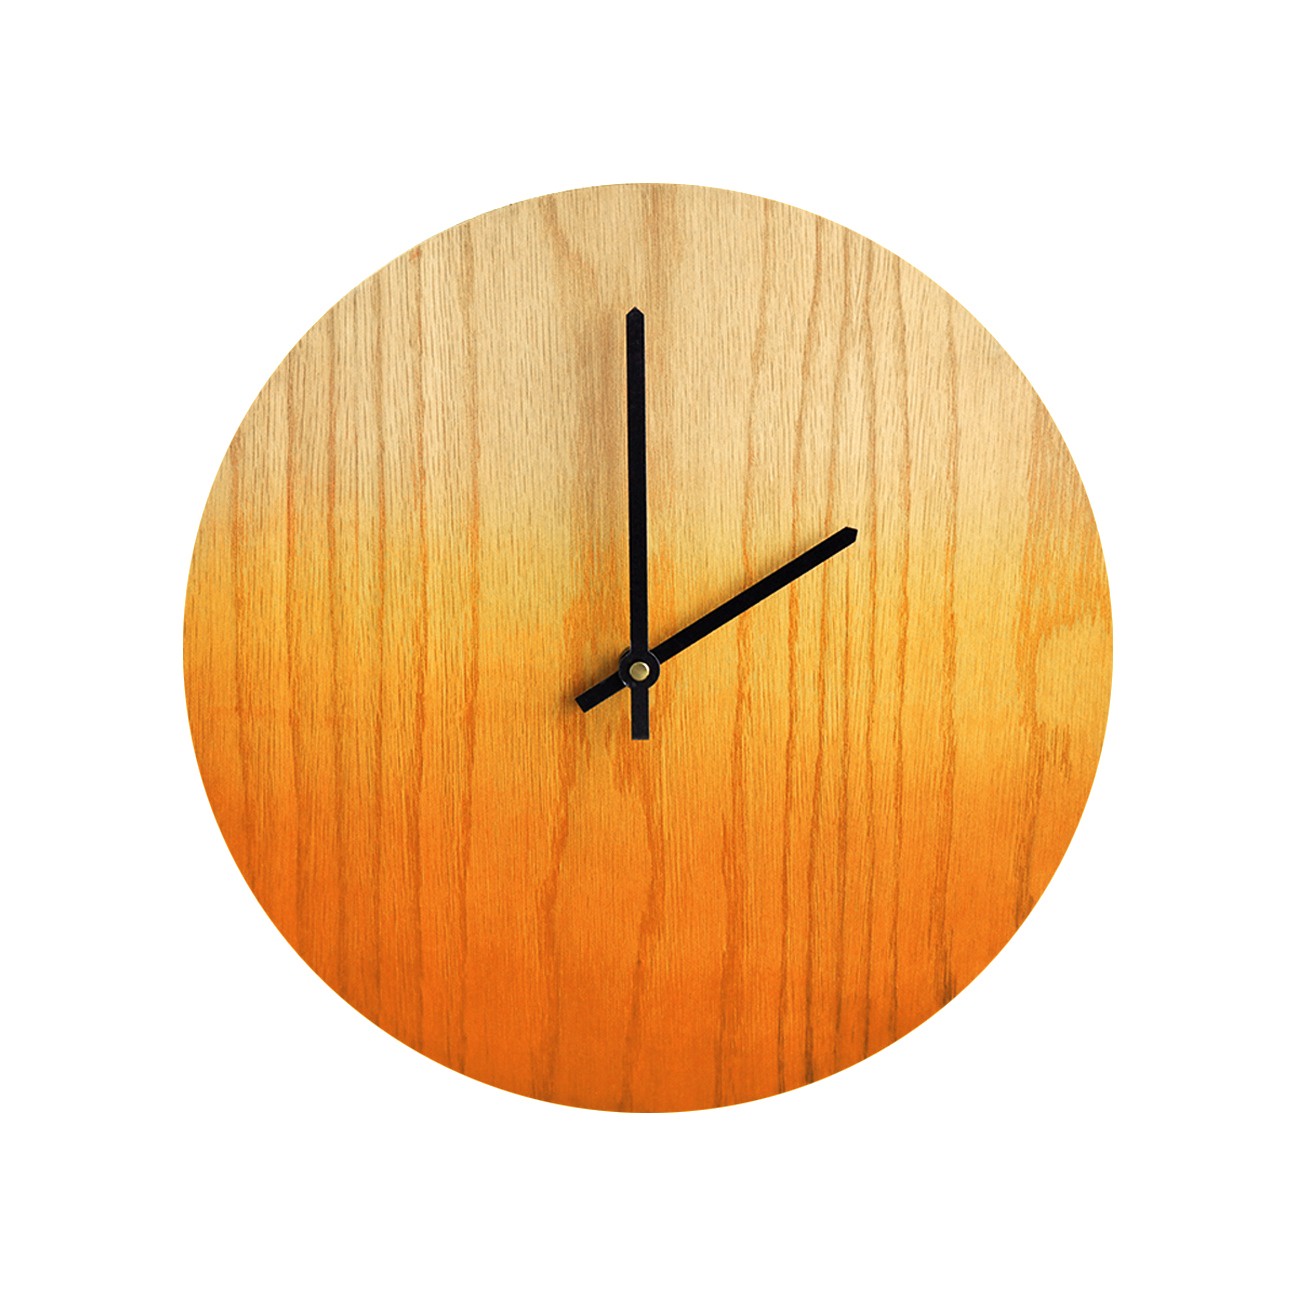 Настенные часы Roomton дизайнерские часы с росписью на дереве в скандинавском стиле, оранжевый